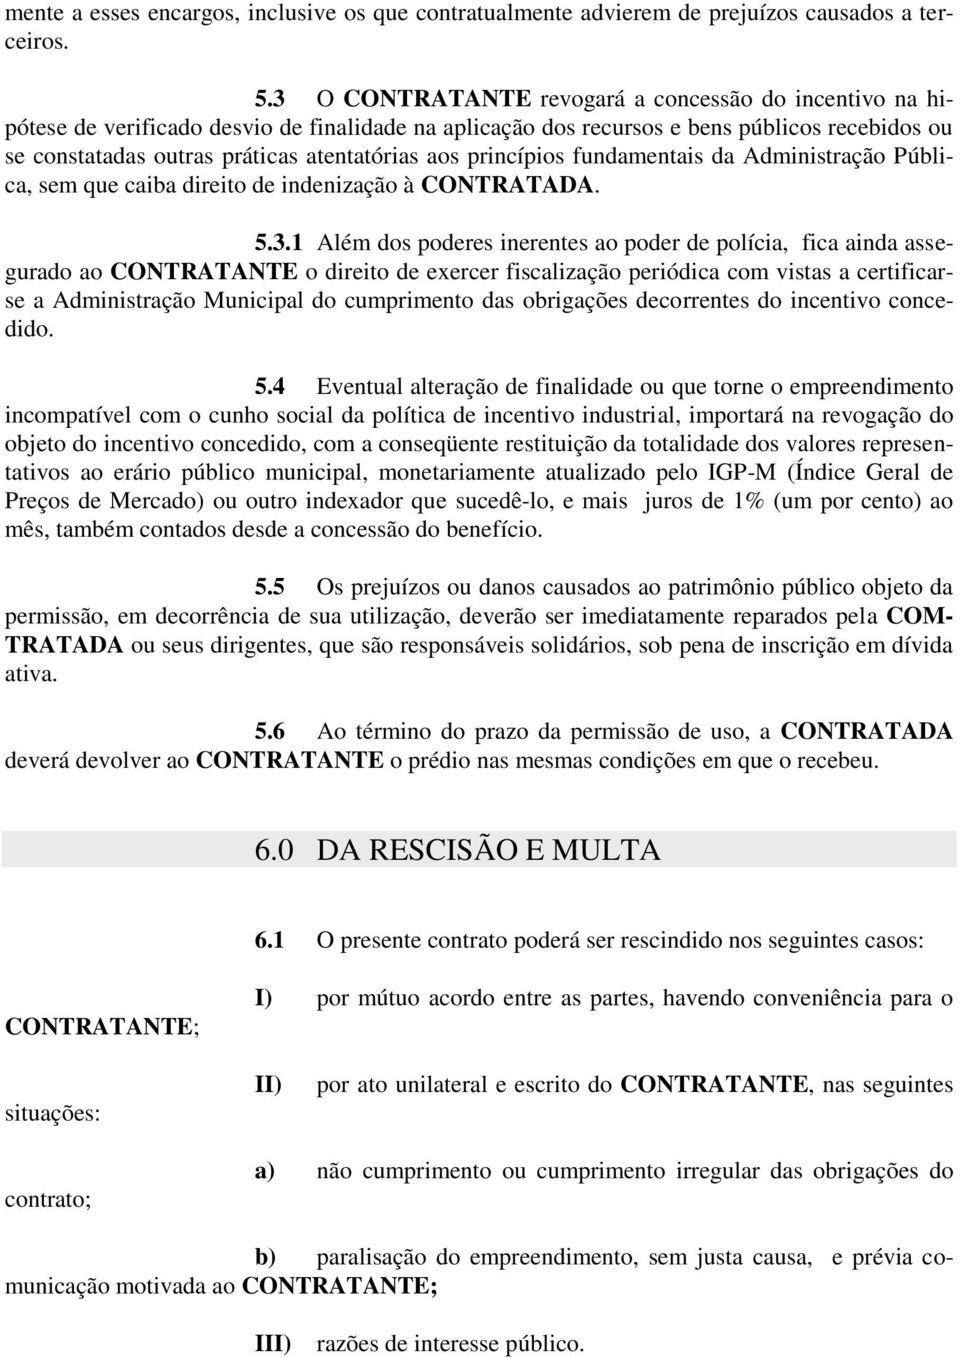 princípios fundamentais da Administração Pública, sem que caiba direito de indenização à CONTRATADA. 5.3.